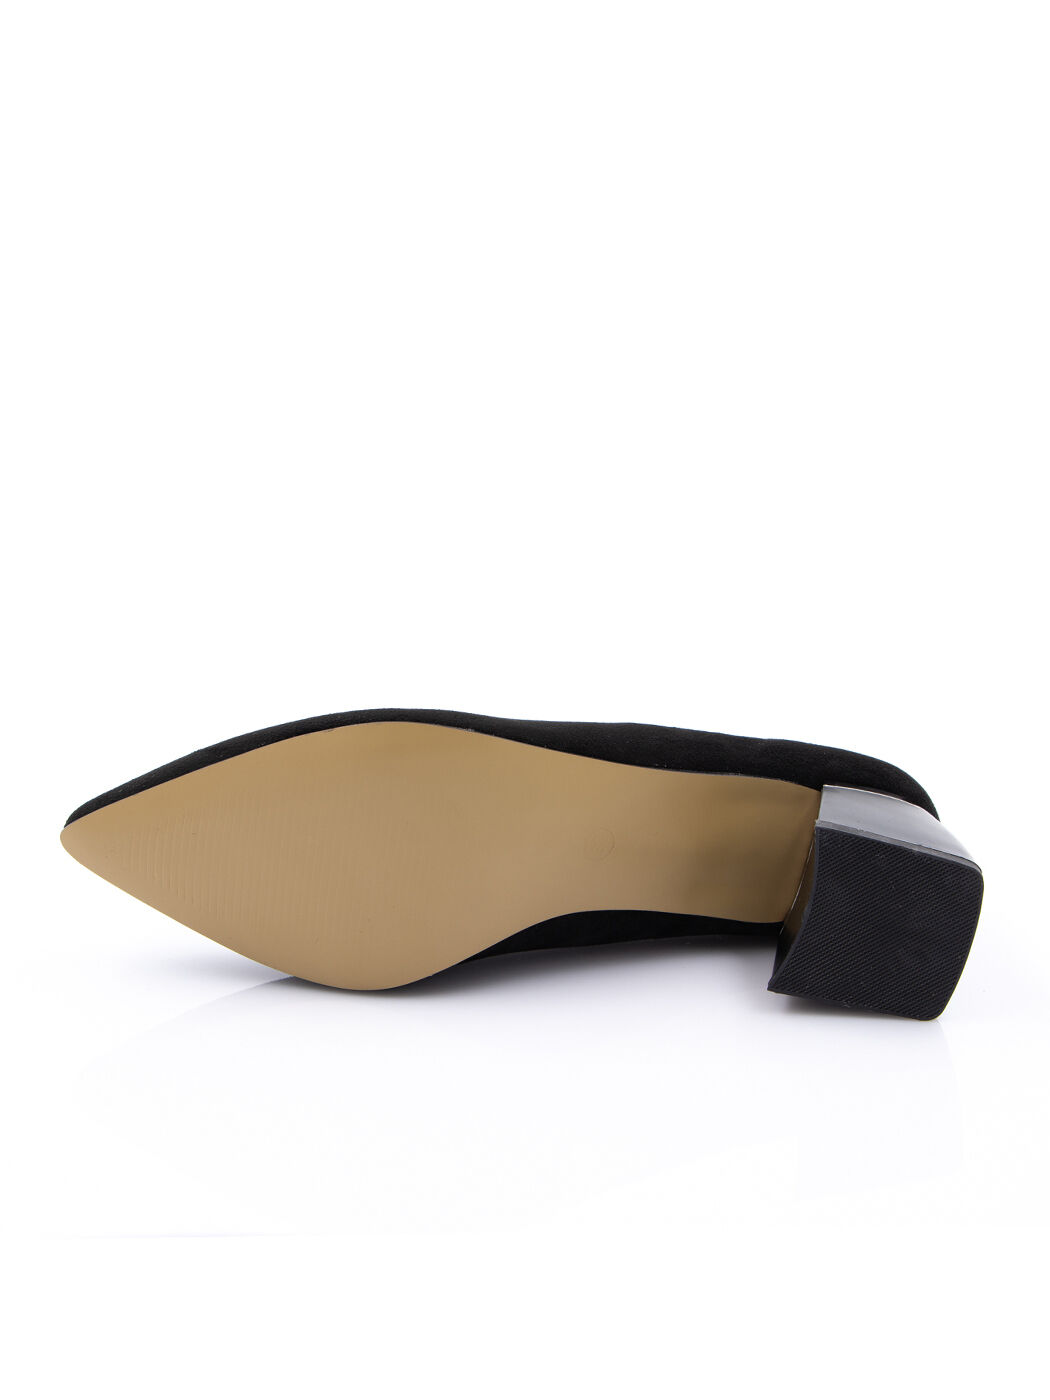 Туфли женские черные экозамша каблук устойчивый демисезон от производителя 7-B-M вид 2